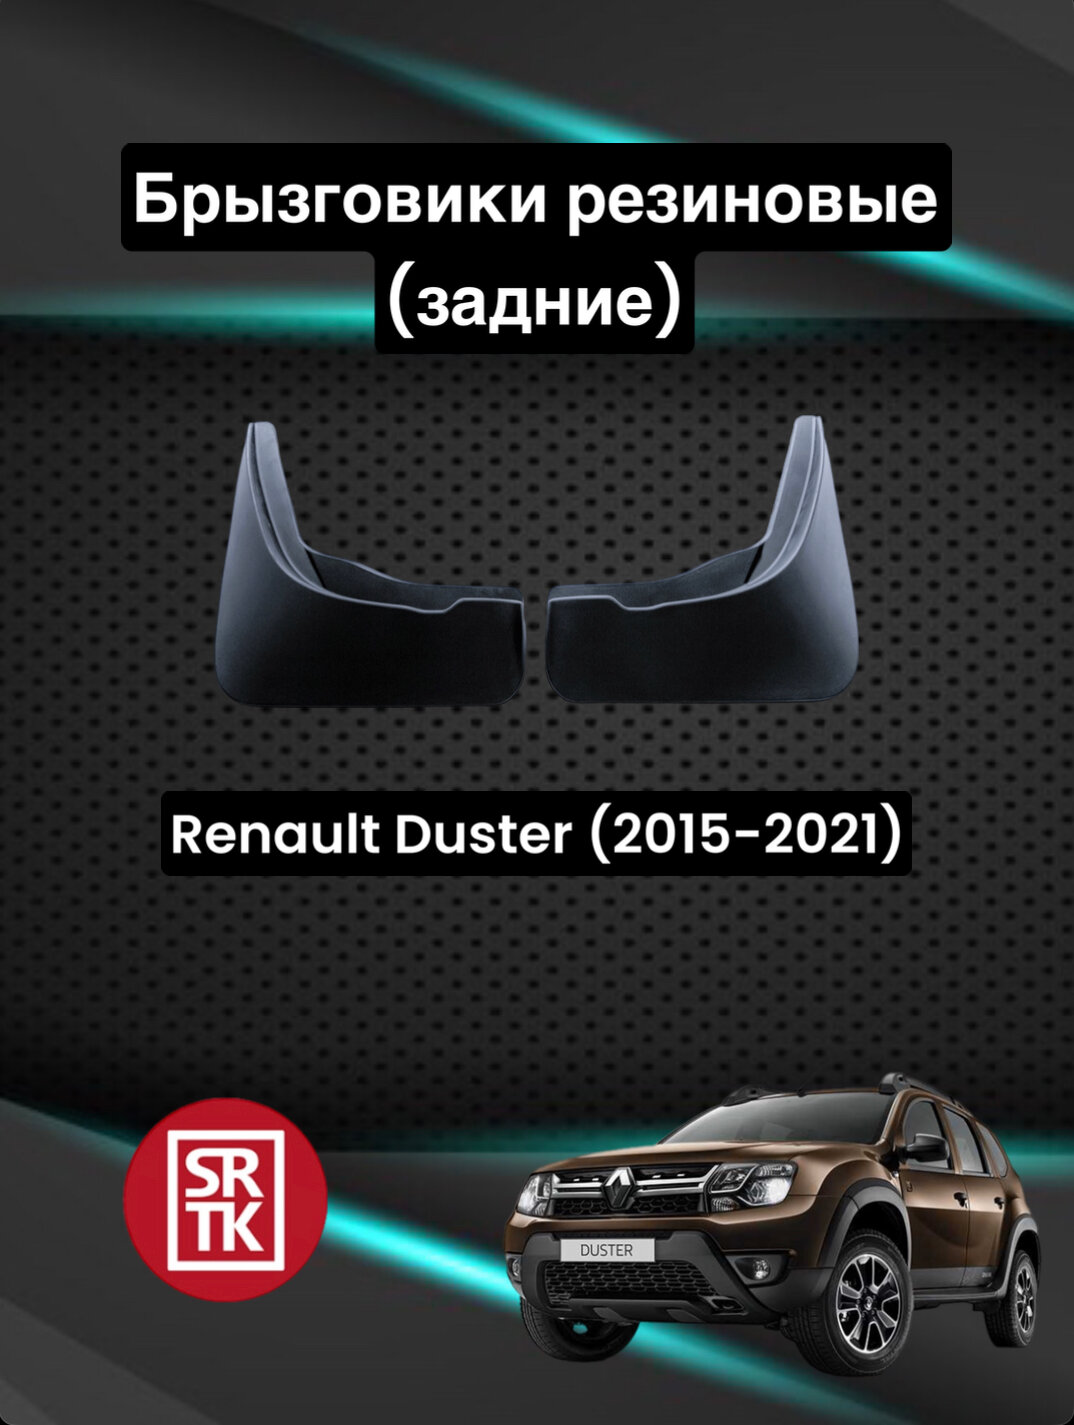 Брызговики резиновые для Renault Duster (2015-2021)/Рено Дастер SRTK задние